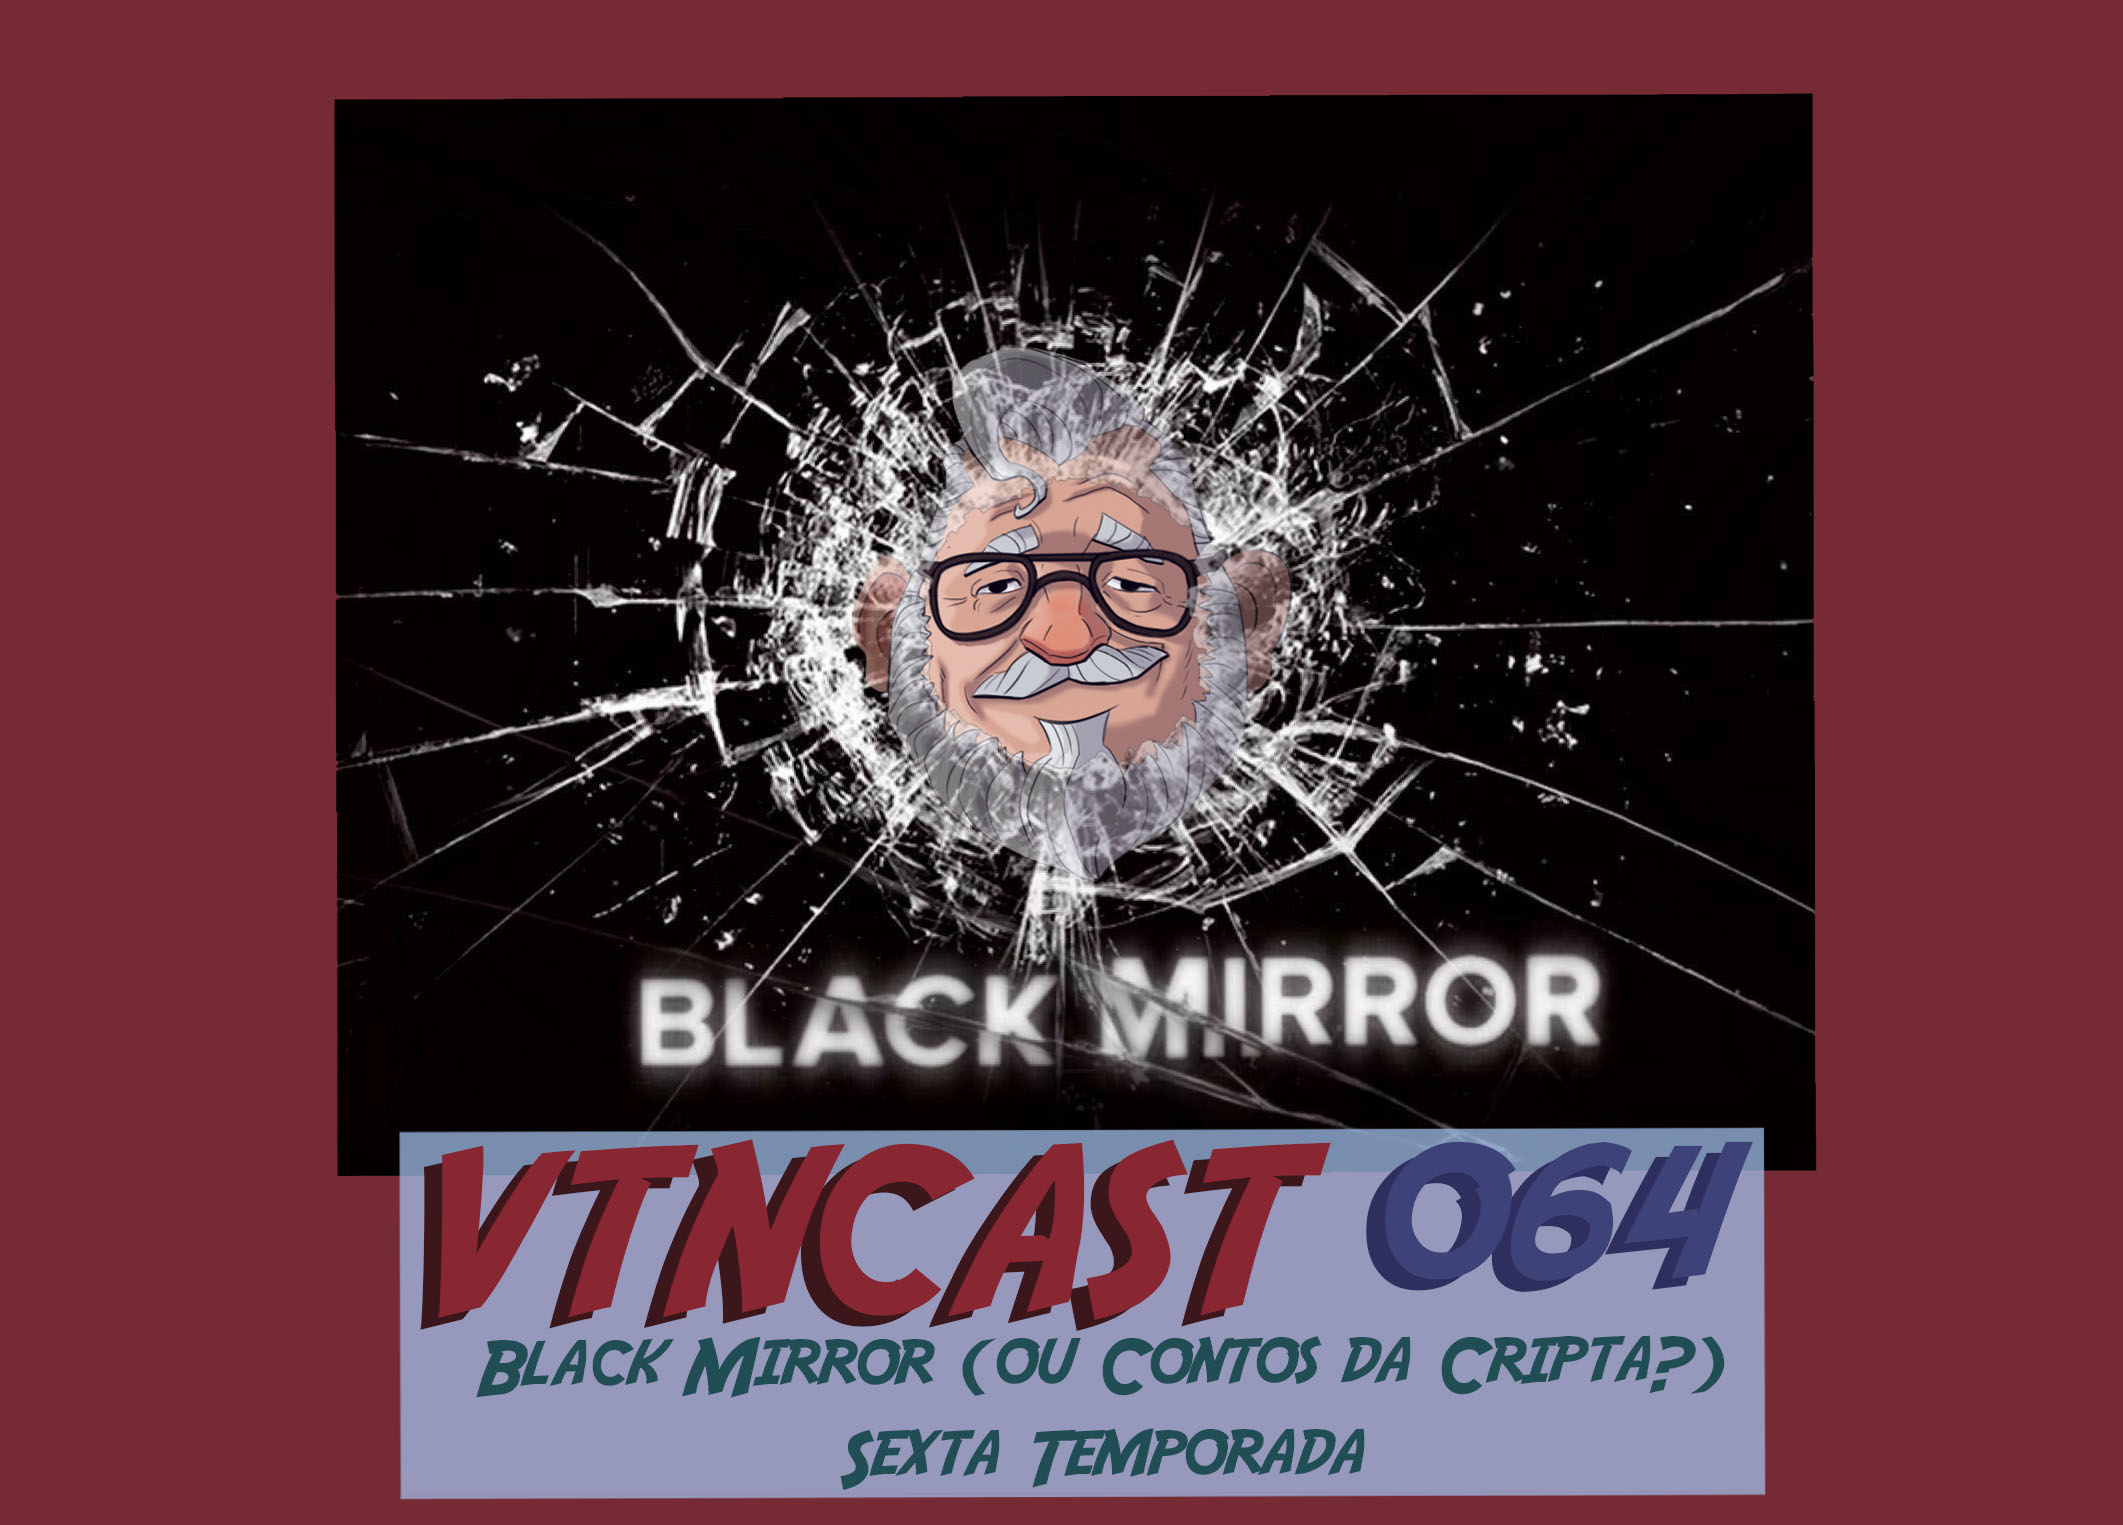 Velho Também vê série. Podcast VTNCast 064 - Black Mirror (ou Contos da Cripta) Sexta Temporada.